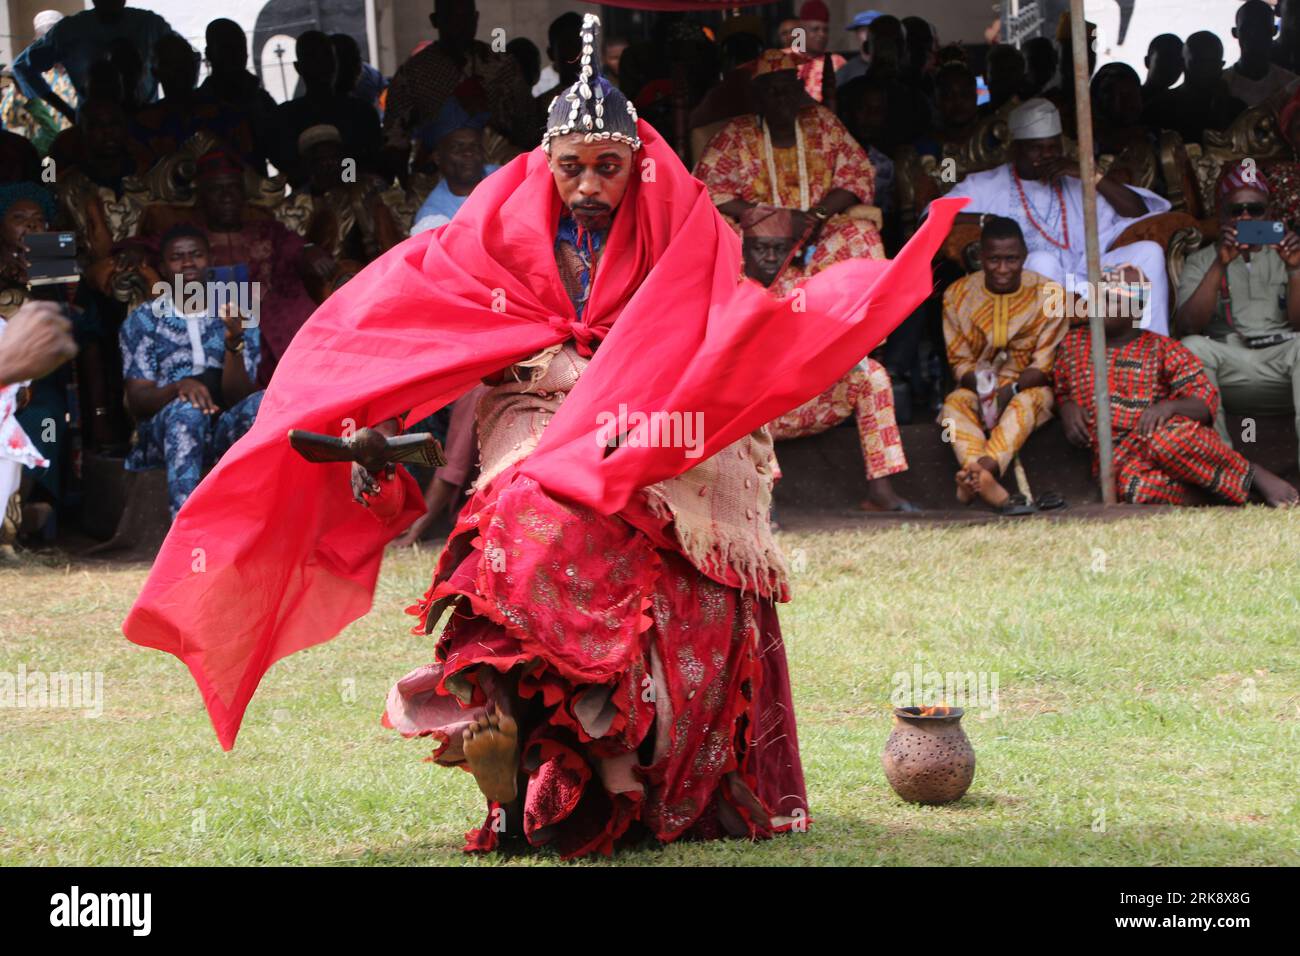 Incarnation vivante de Sàngó, conduit les fidèles à accomplir l'un des rites les plus sacrés au Festival mondial de Sango qui est un festival annuel organisé parmi le peuple Yoruba en l'honneur de Sango, une divinité du tonnerre et du feu qui était un guerrier et le troisième roi de l'Empire Oyo après avoir succédé à Ajaka son frère aîné. Le festival accueille des visiteurs de tout le pays et des adeptes de pays étrangers. Etat d'Oyo, Lagos, Nigeria. Banque D'Images